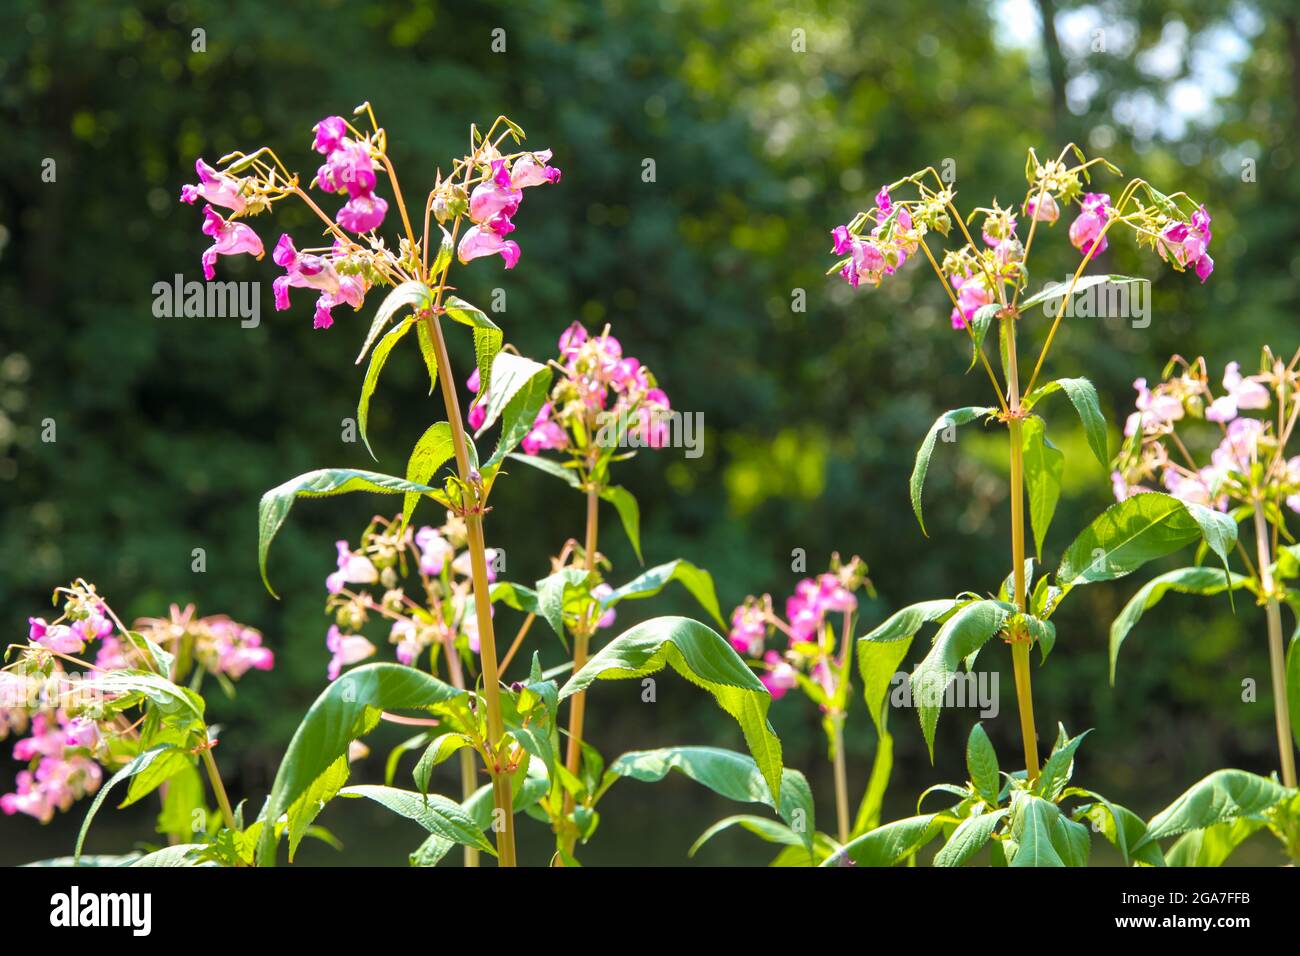 Himalayan Balsam (Impatiens glandurifera), EINE nicht-native invasive Pflanze. Die größte jährliche Pflanze in Großbritannien, die in River Mole, Leatherhead, Surre wächst Stockfoto